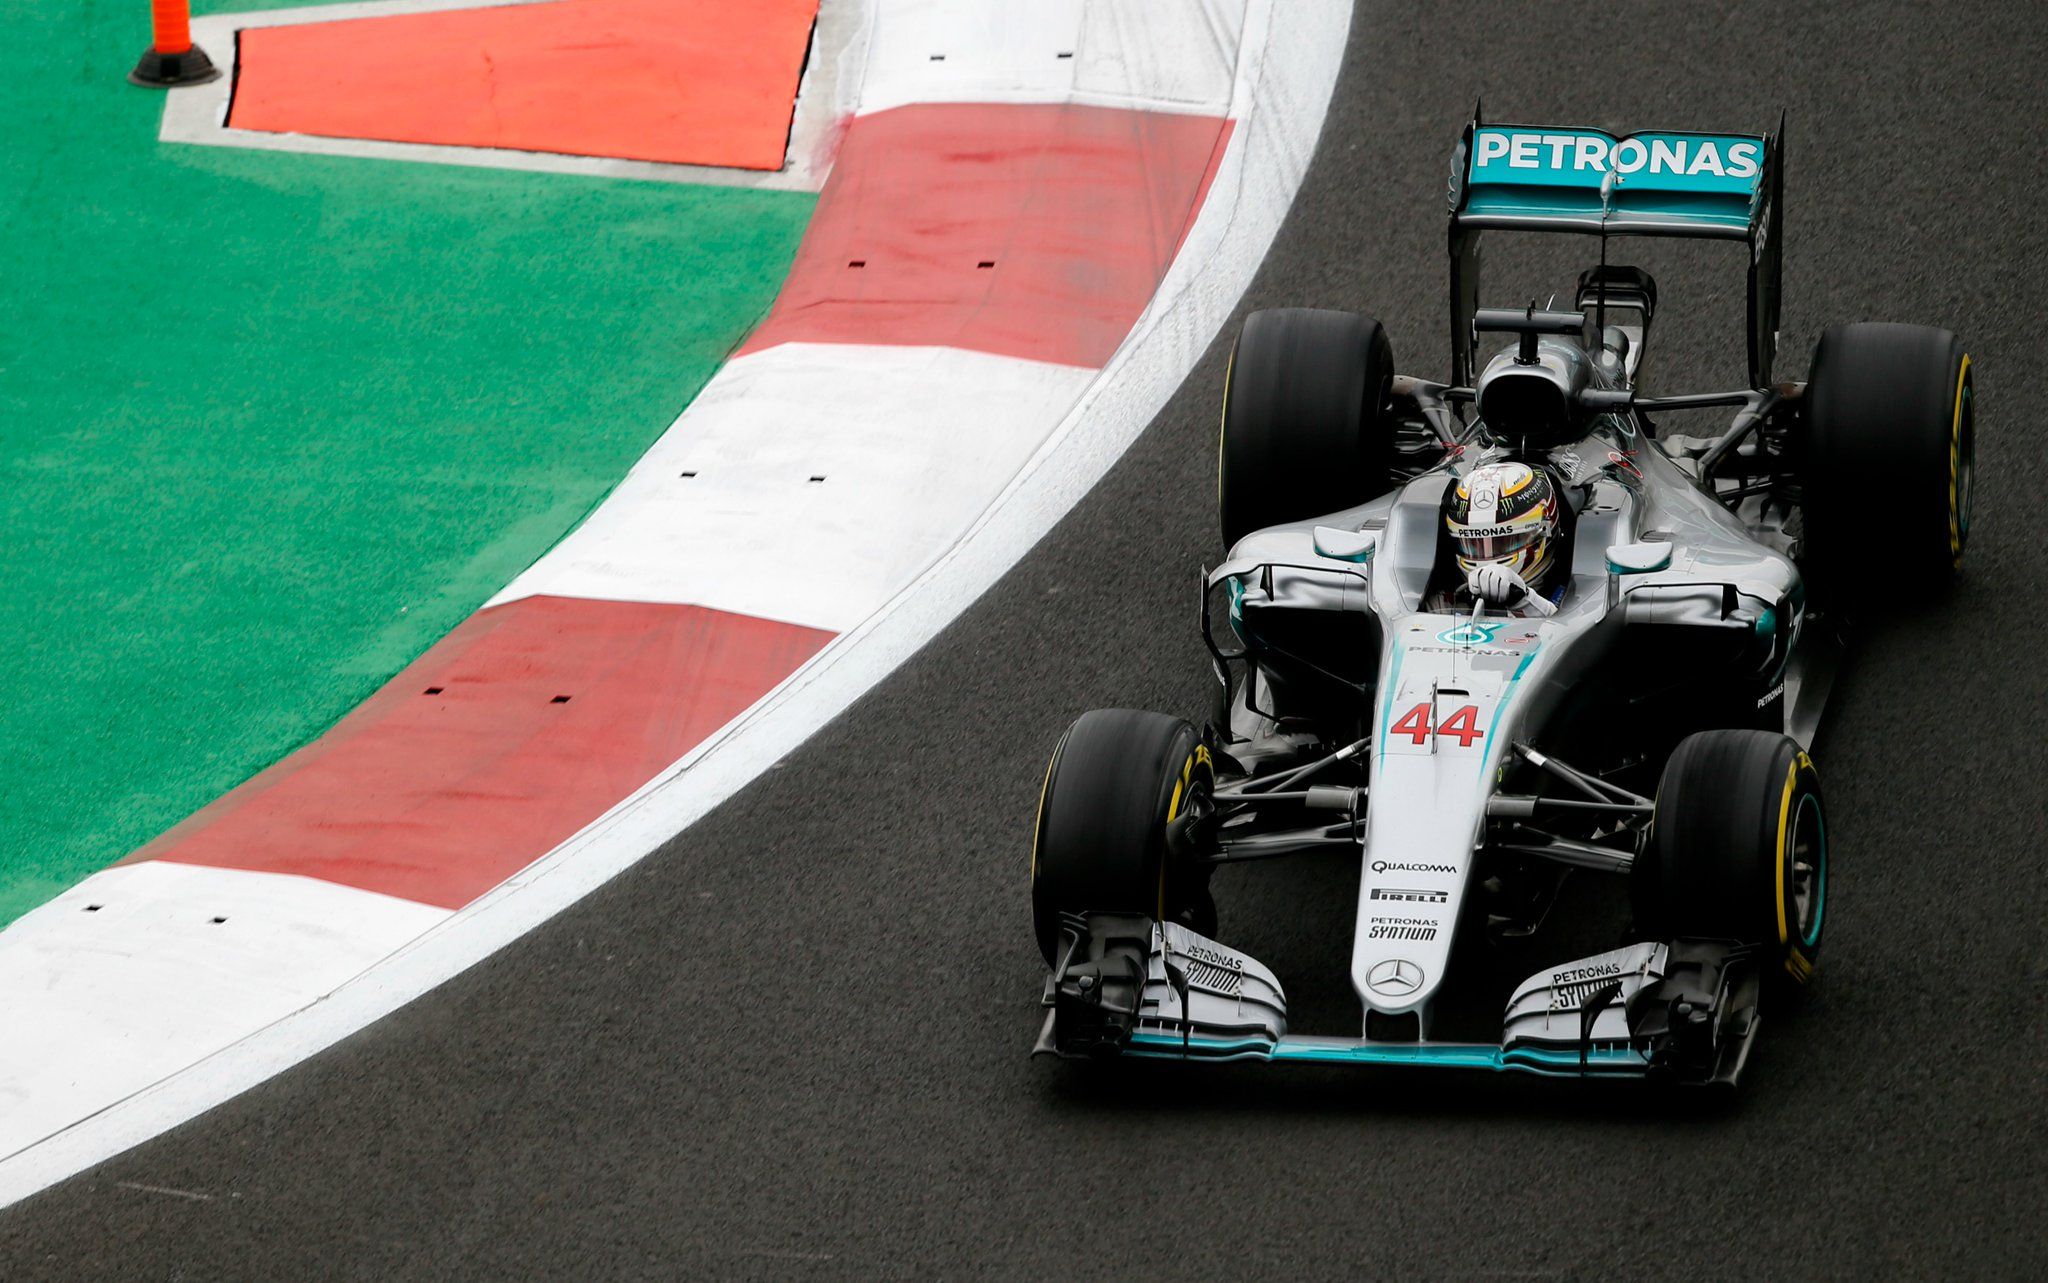 Ancora una pole position per Lewis Hamilton, il migliore nelle qualifiche di CIttà del Messico (foto da: gazetaesportiva.com)